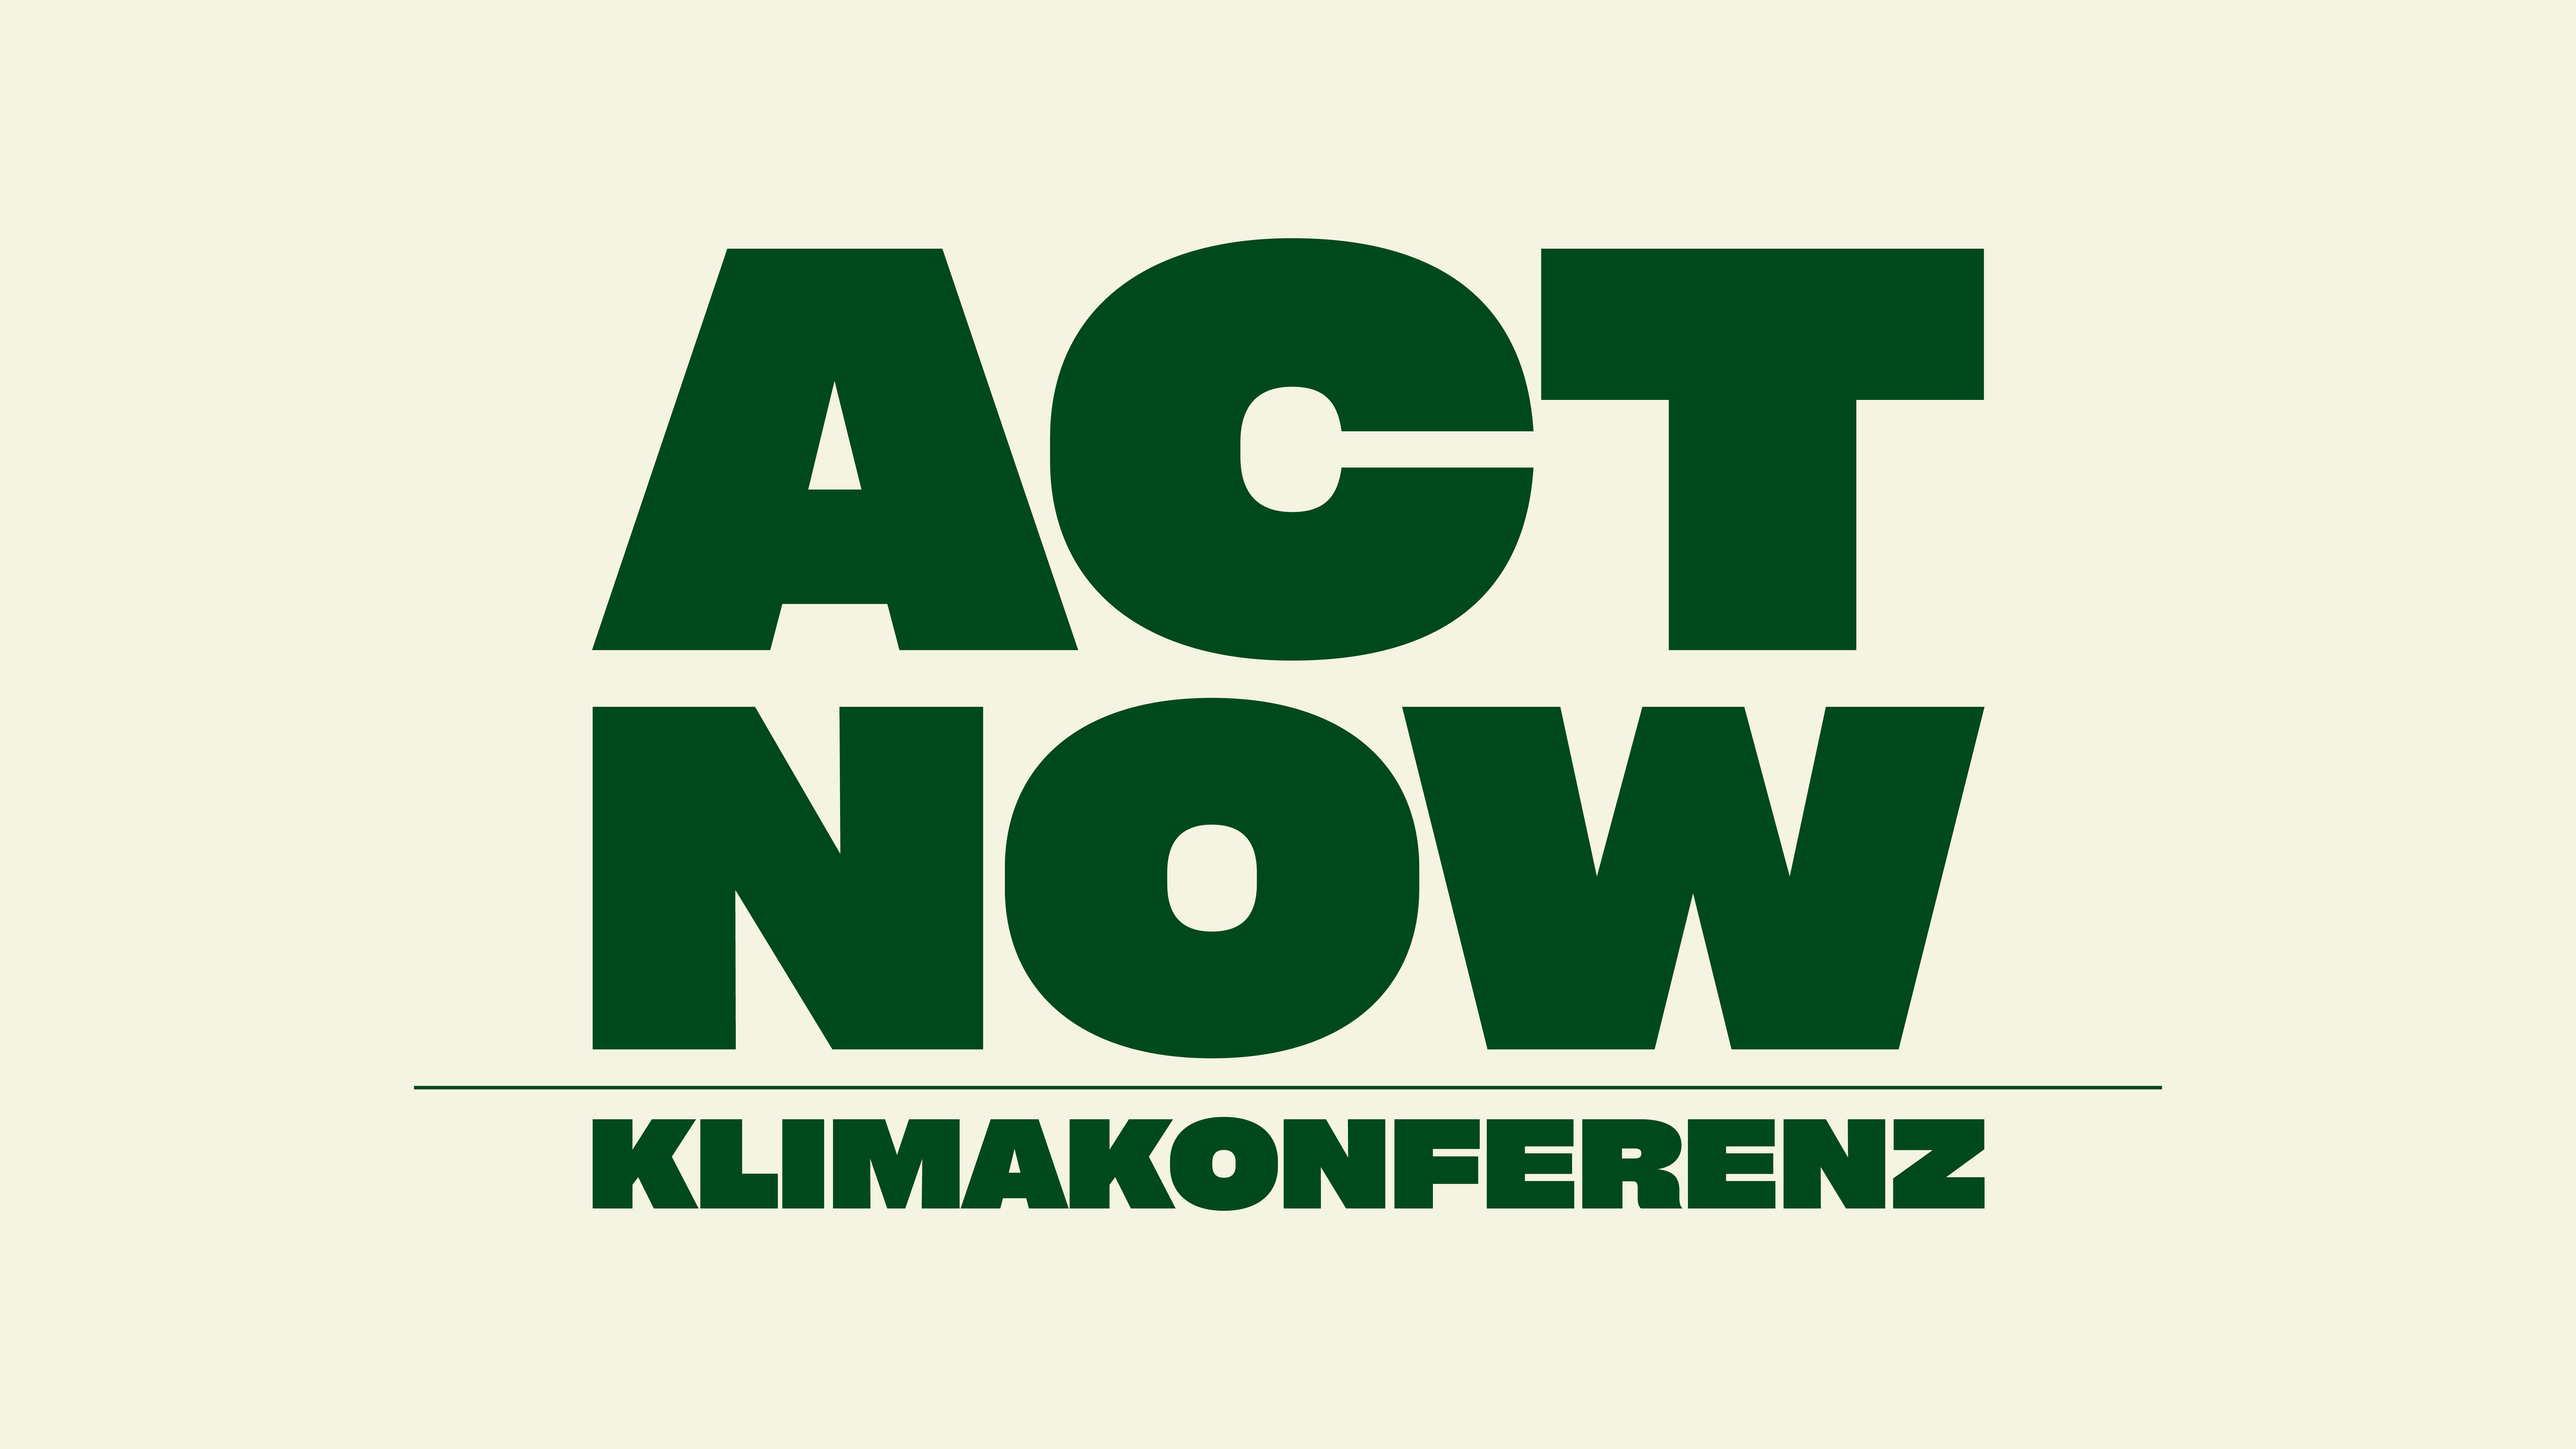 ACT NOW! Klimakonferenz